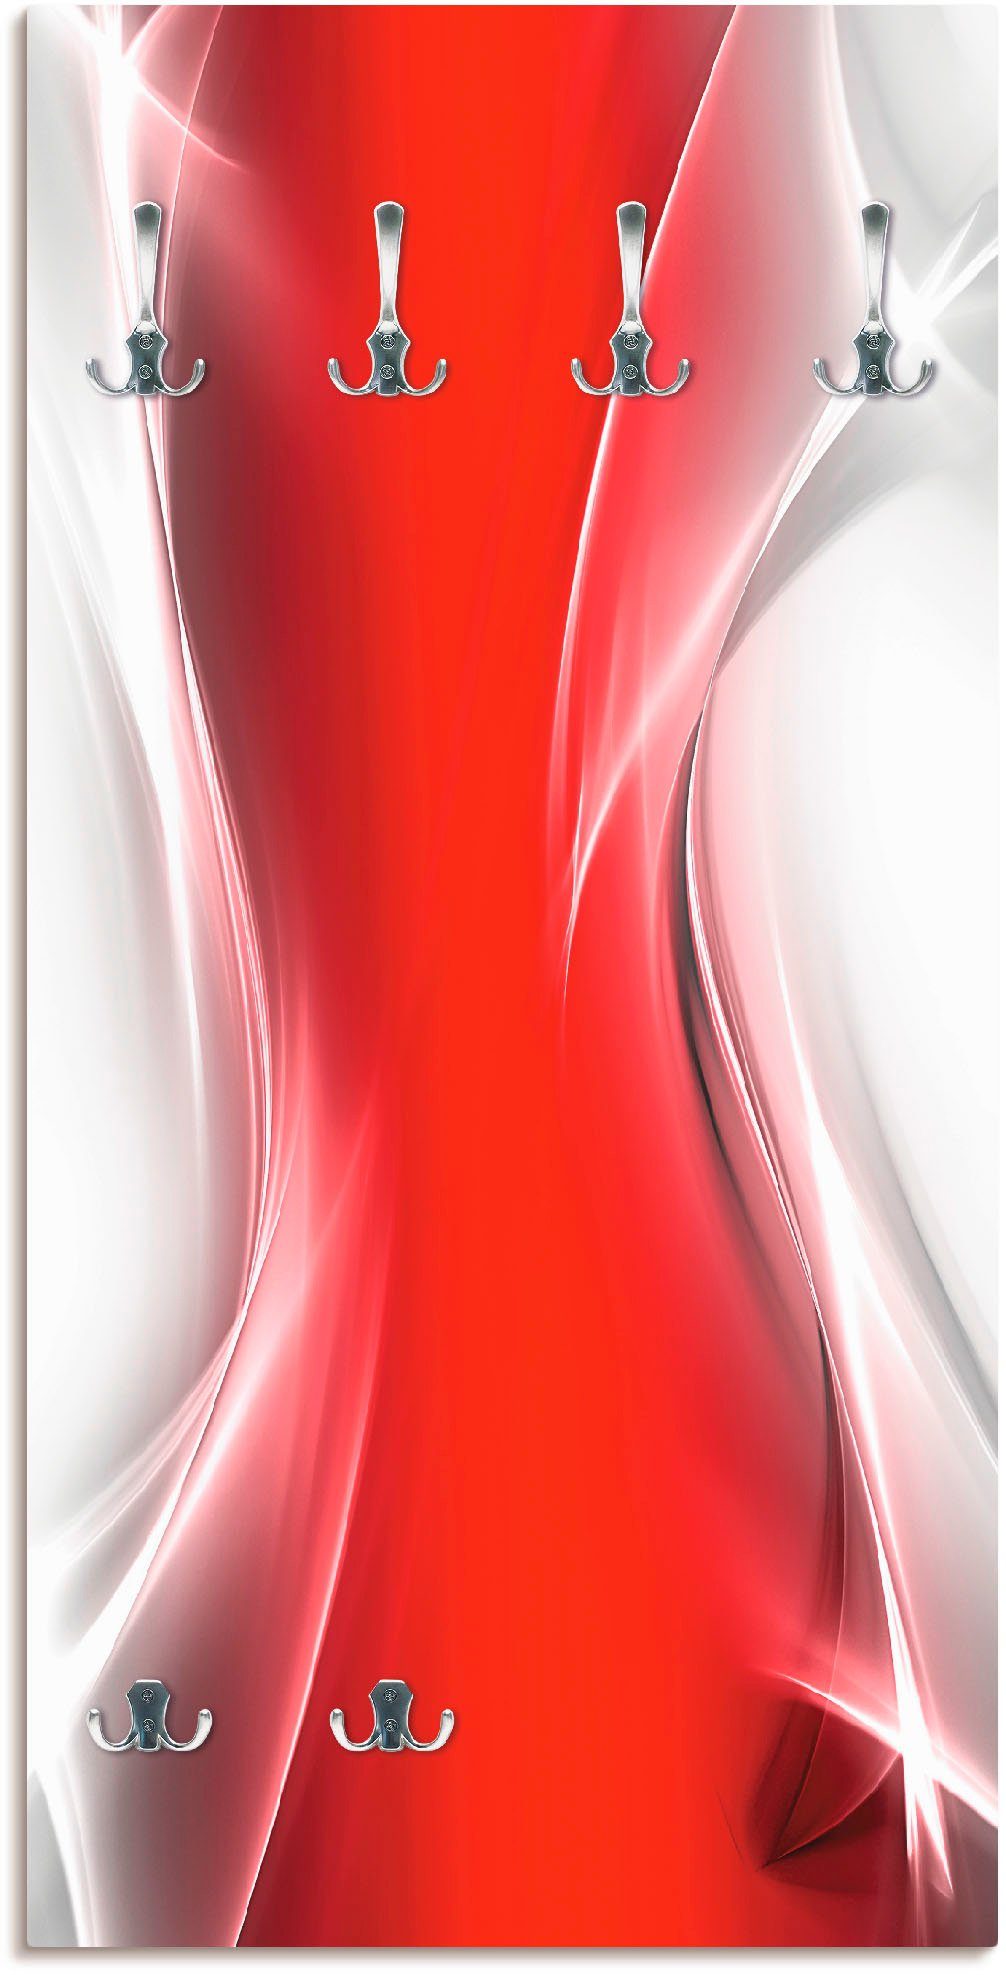 Artland Kapstokpaneel Creatief element rood voor uw artdesign ruimtebesparende kapstok van hout met 6 haken, geschikt voor kleine, smalle hal, halkapstok